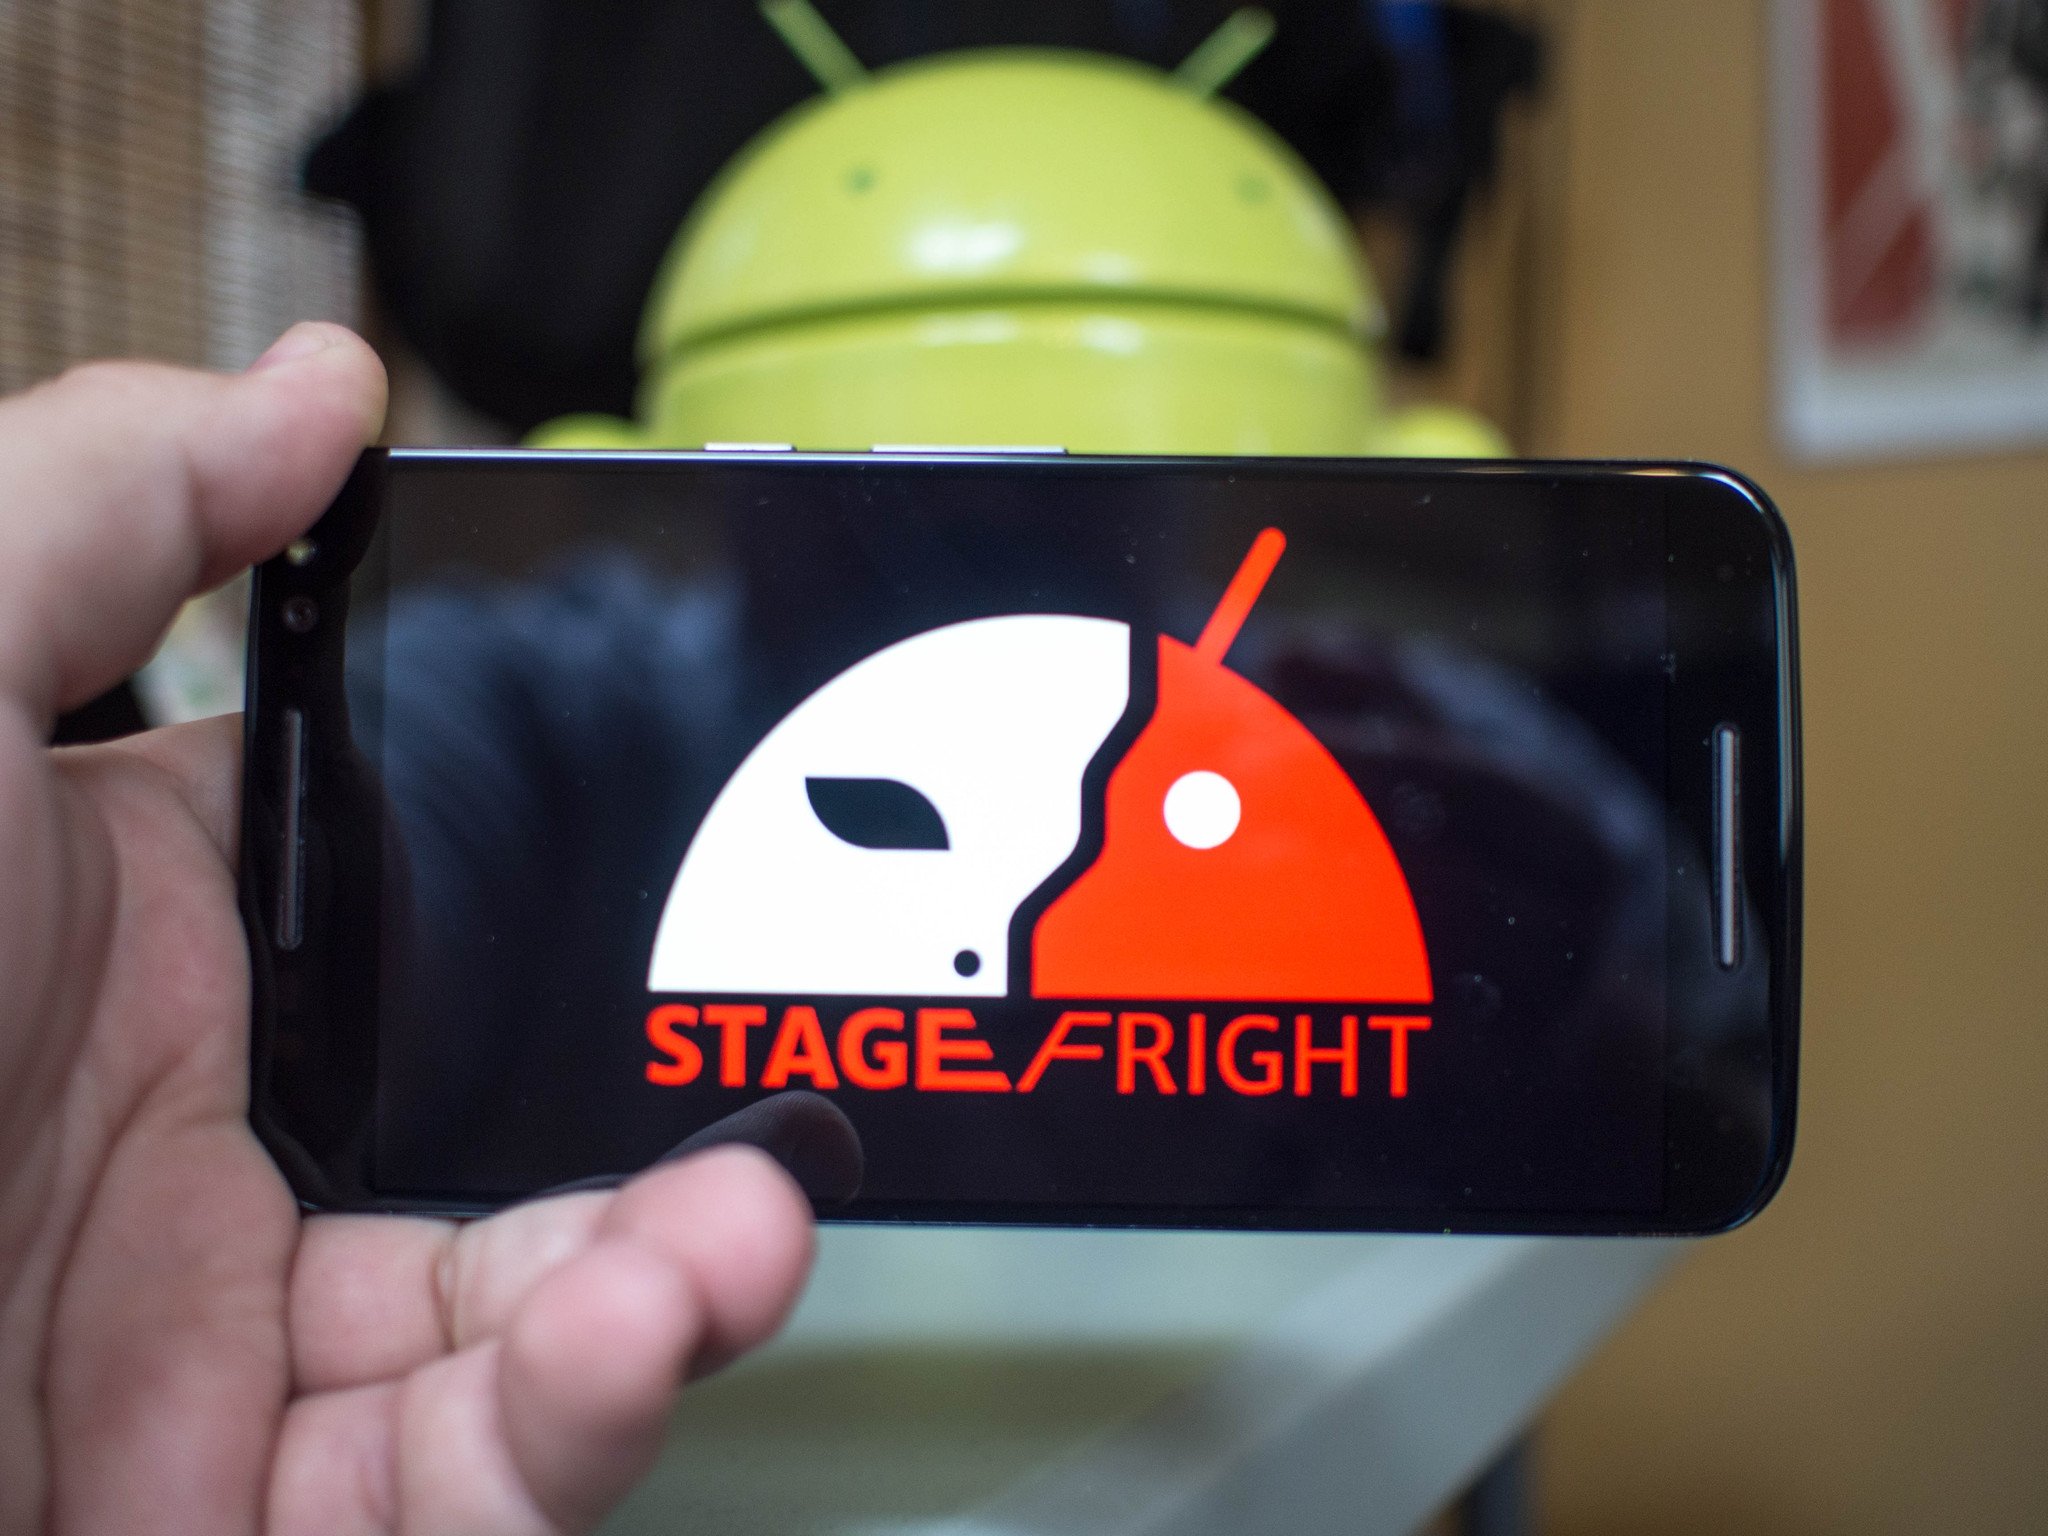 [DISCUSSION] Informations sur les mises à jour Android et la sécurité qui en découle Stagefright